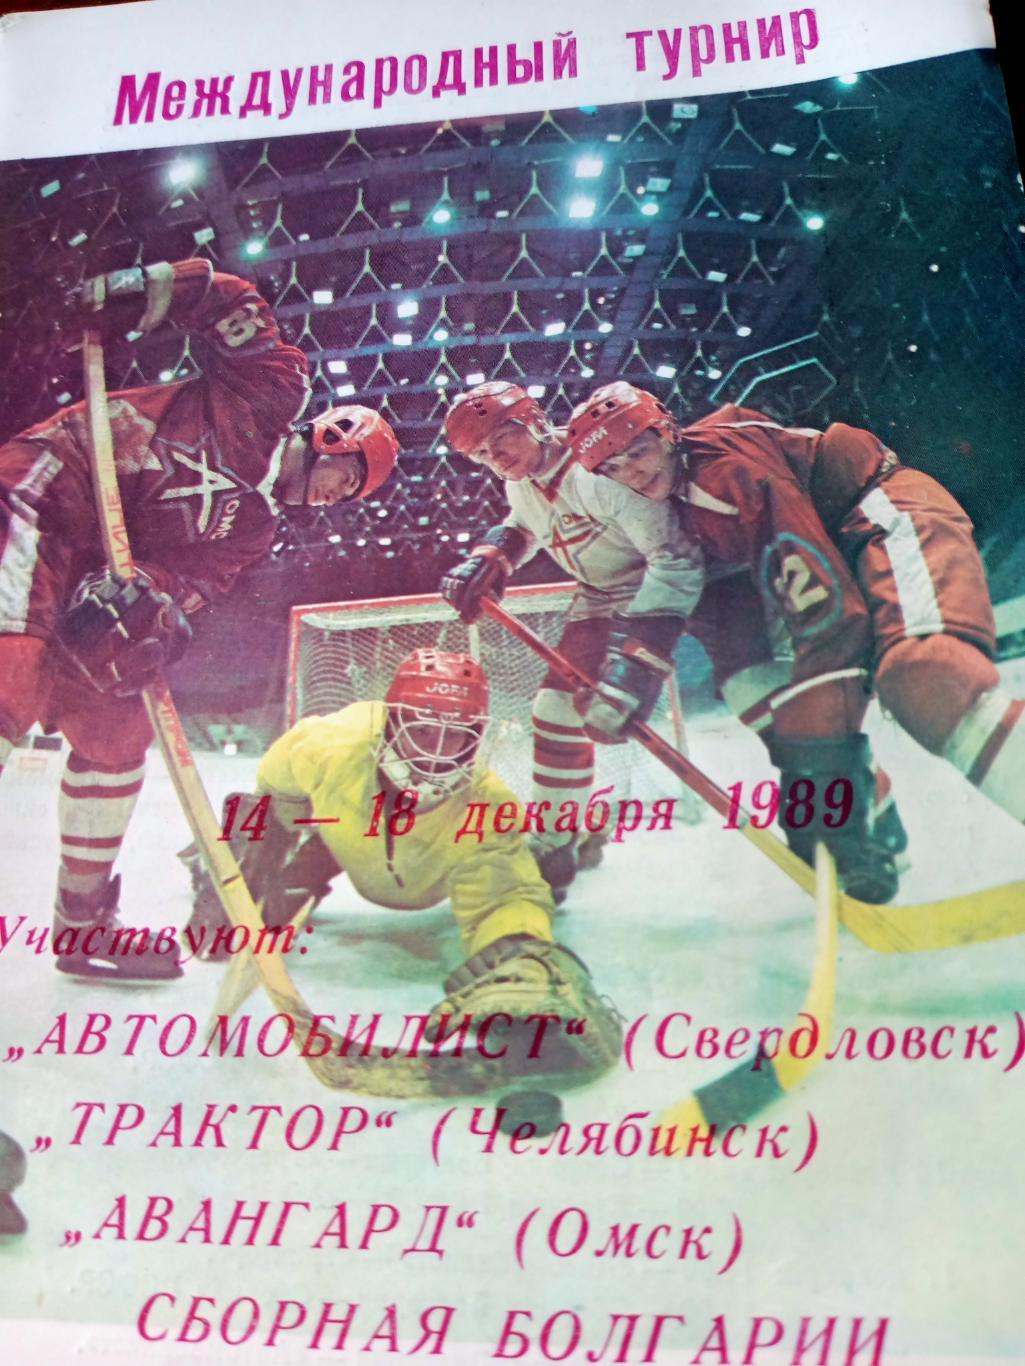 Международный турнир. Омск. 1989 год